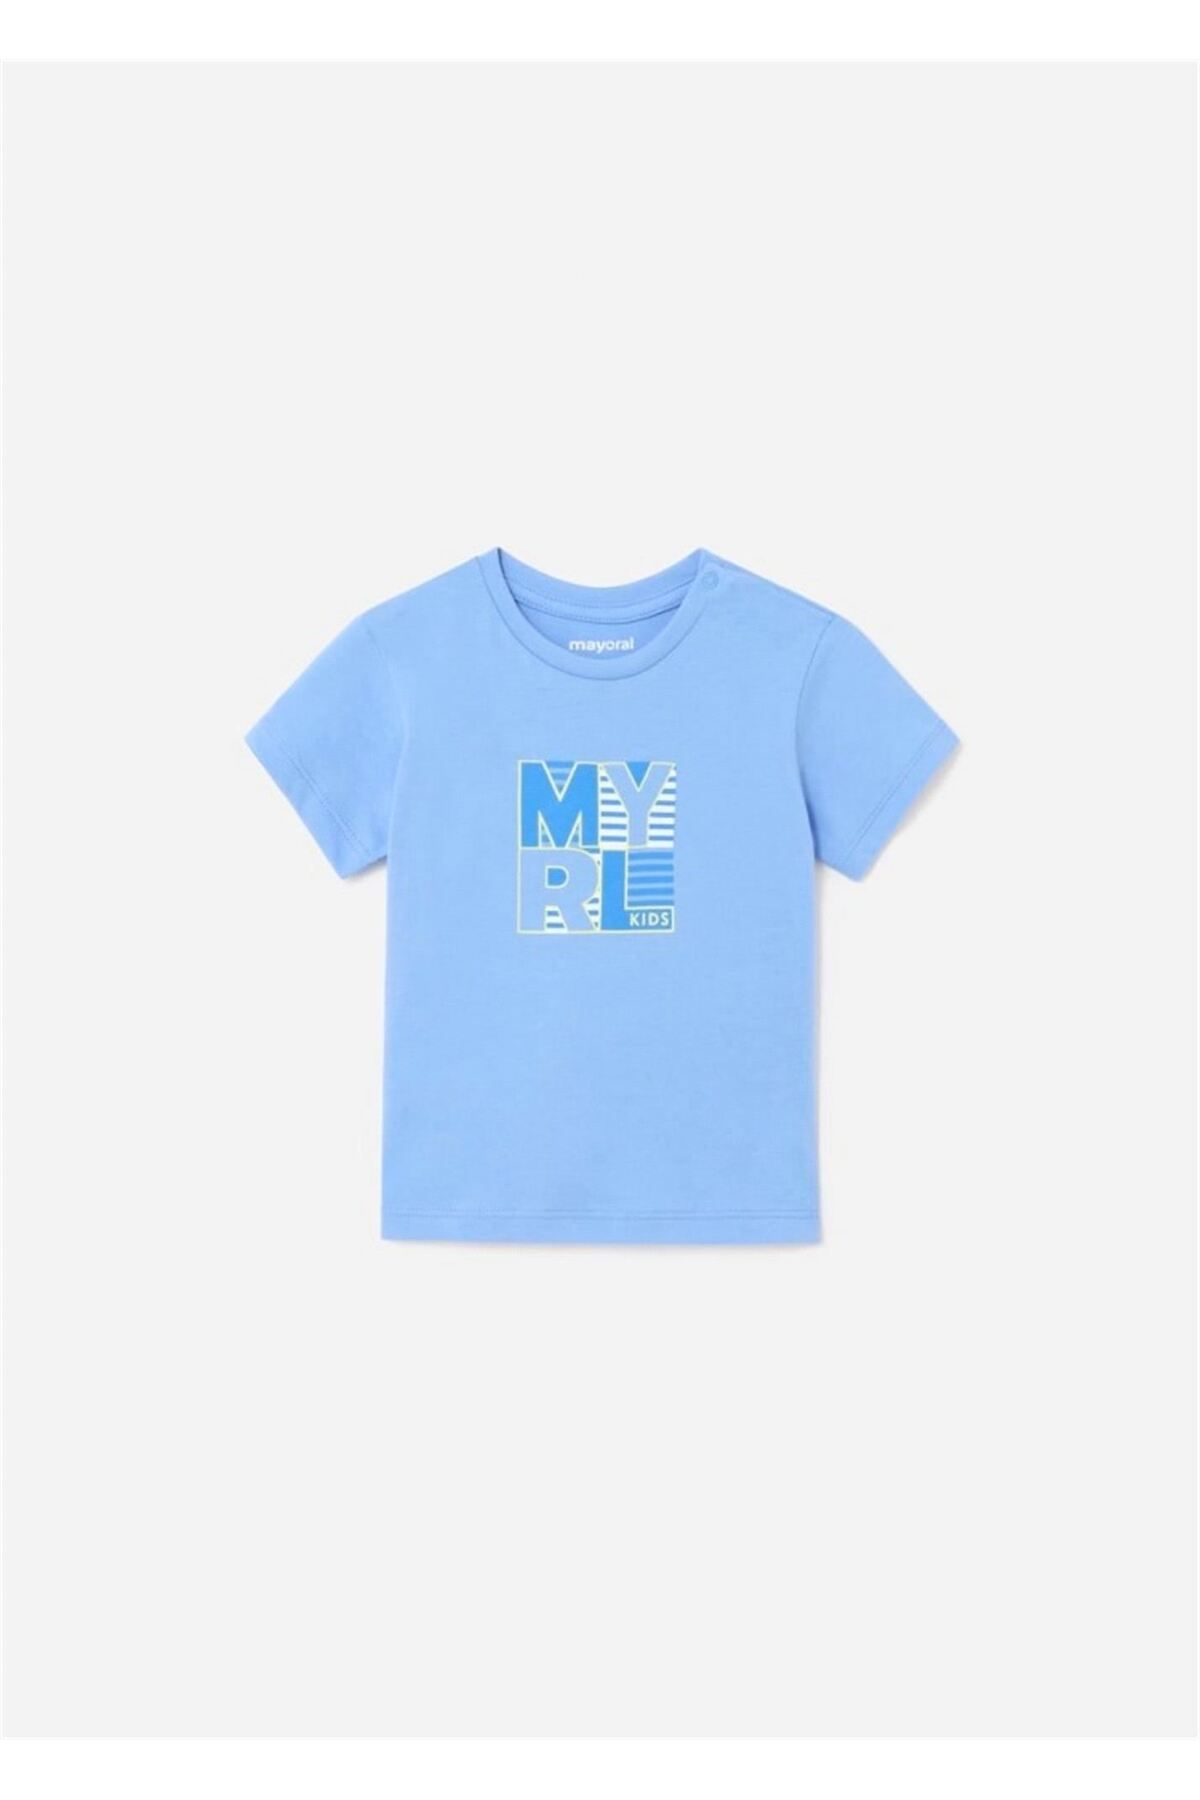 Mayoral Erkek Bebek Baskılı Tişört Mavi 106